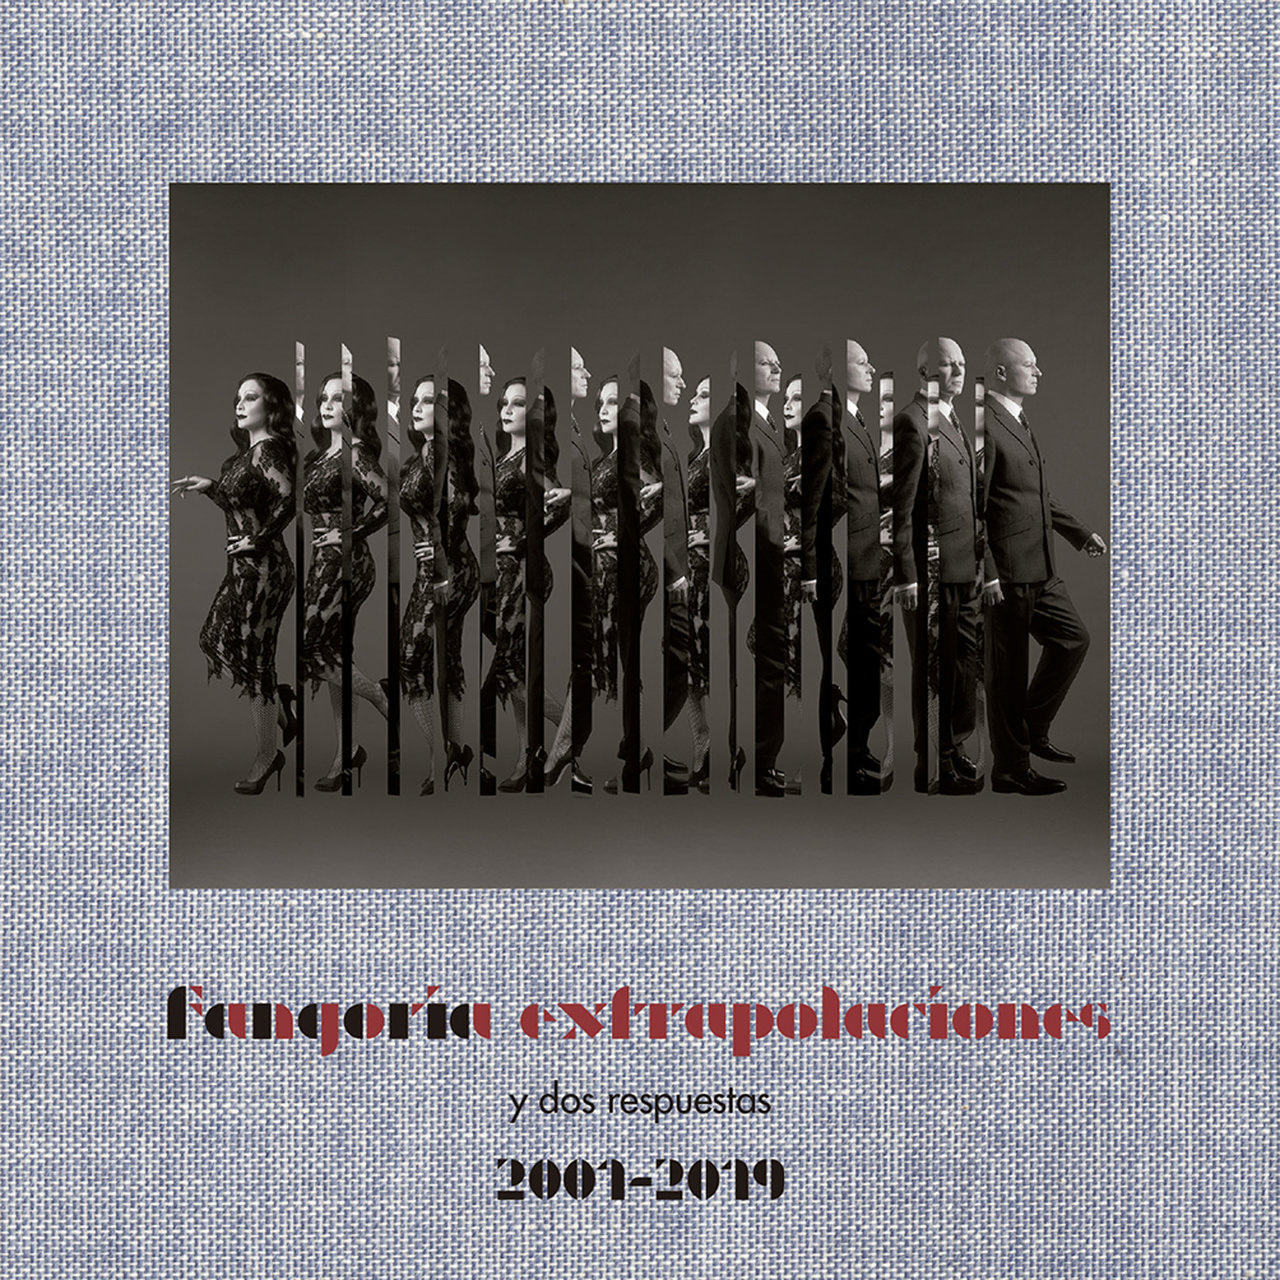 Fangoria Extrapolaciones y dos respuestas 2001-2019 cover artwork